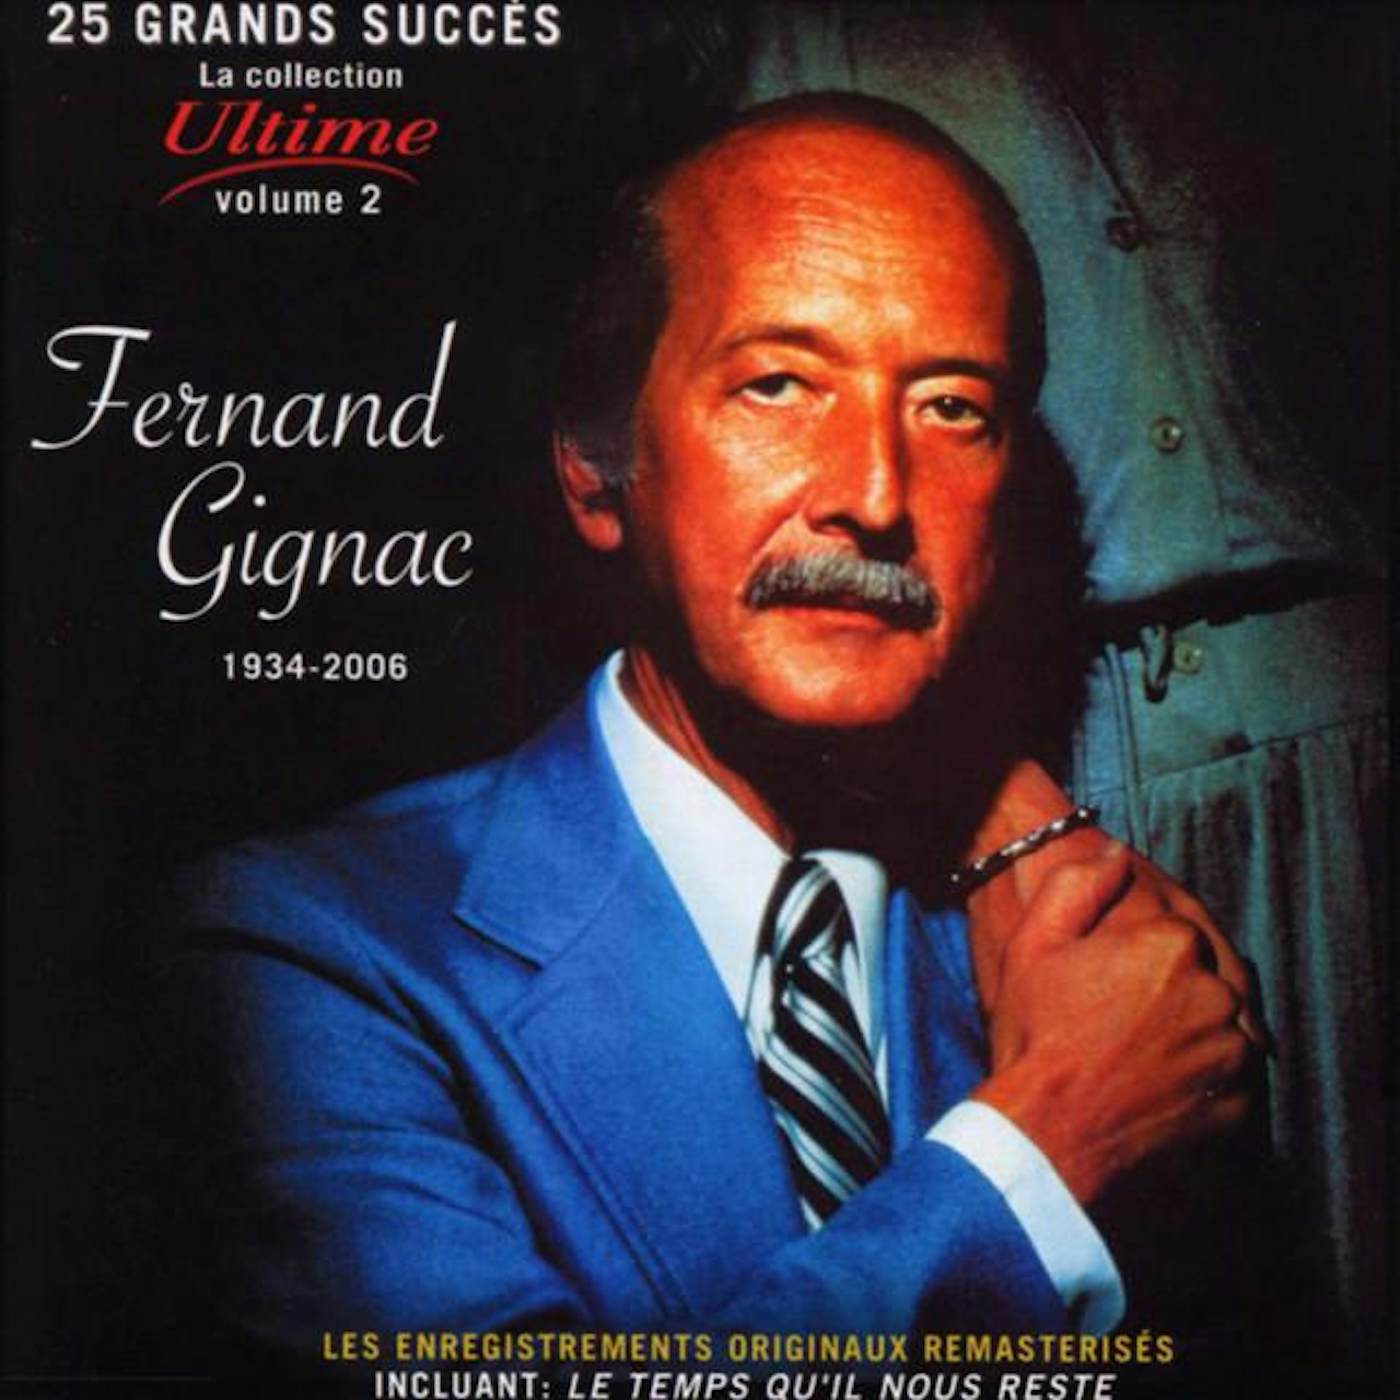 Fernand Gignac